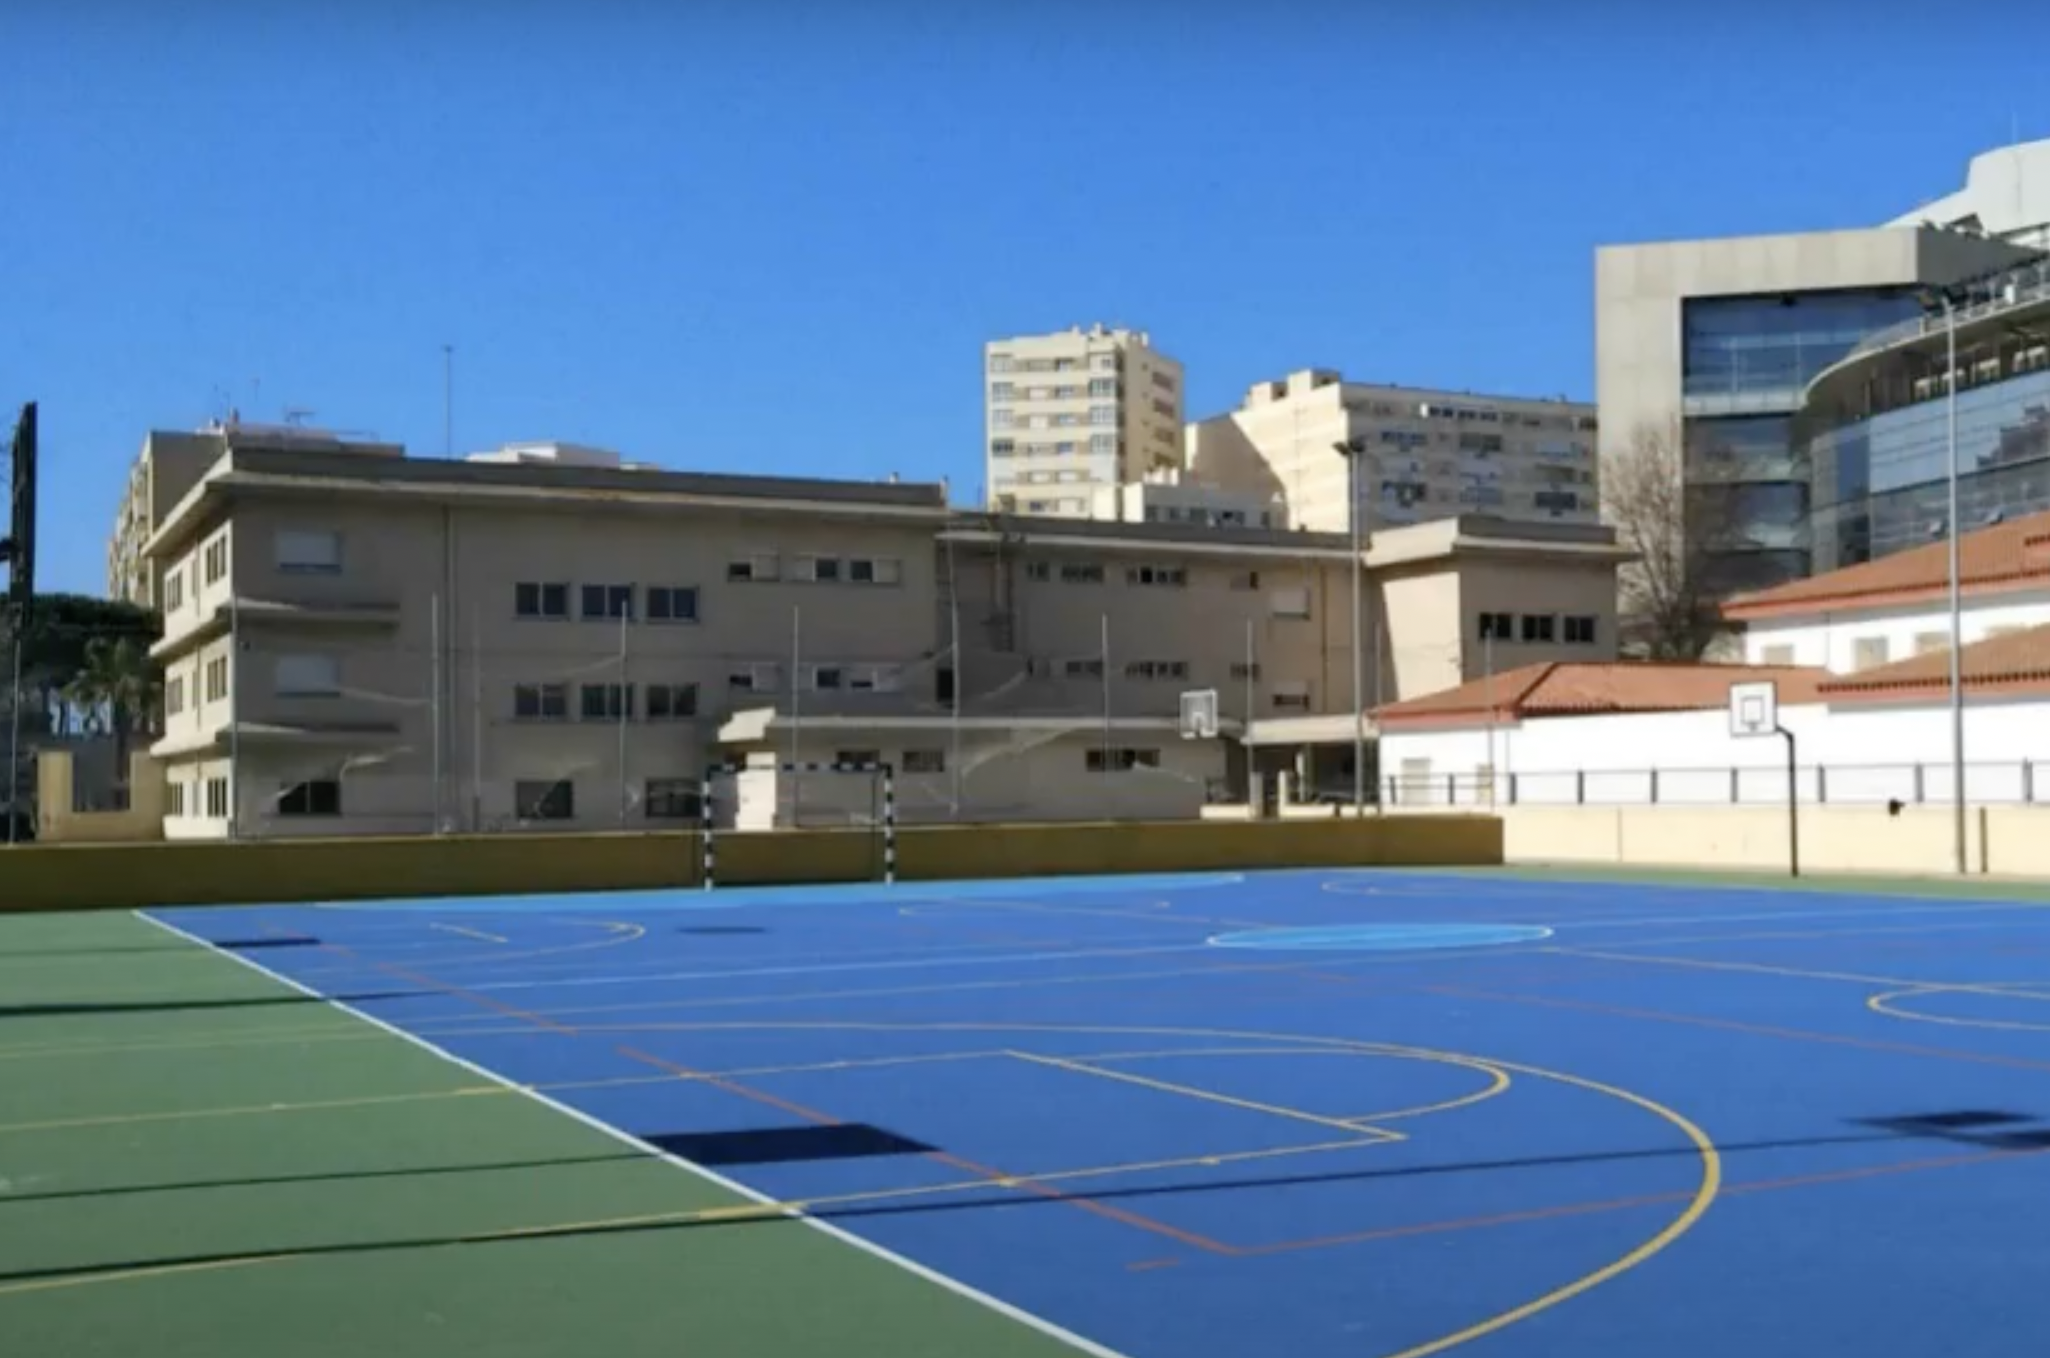 Patio de deportes del CEIP Tierno Galván de Cádiz. 